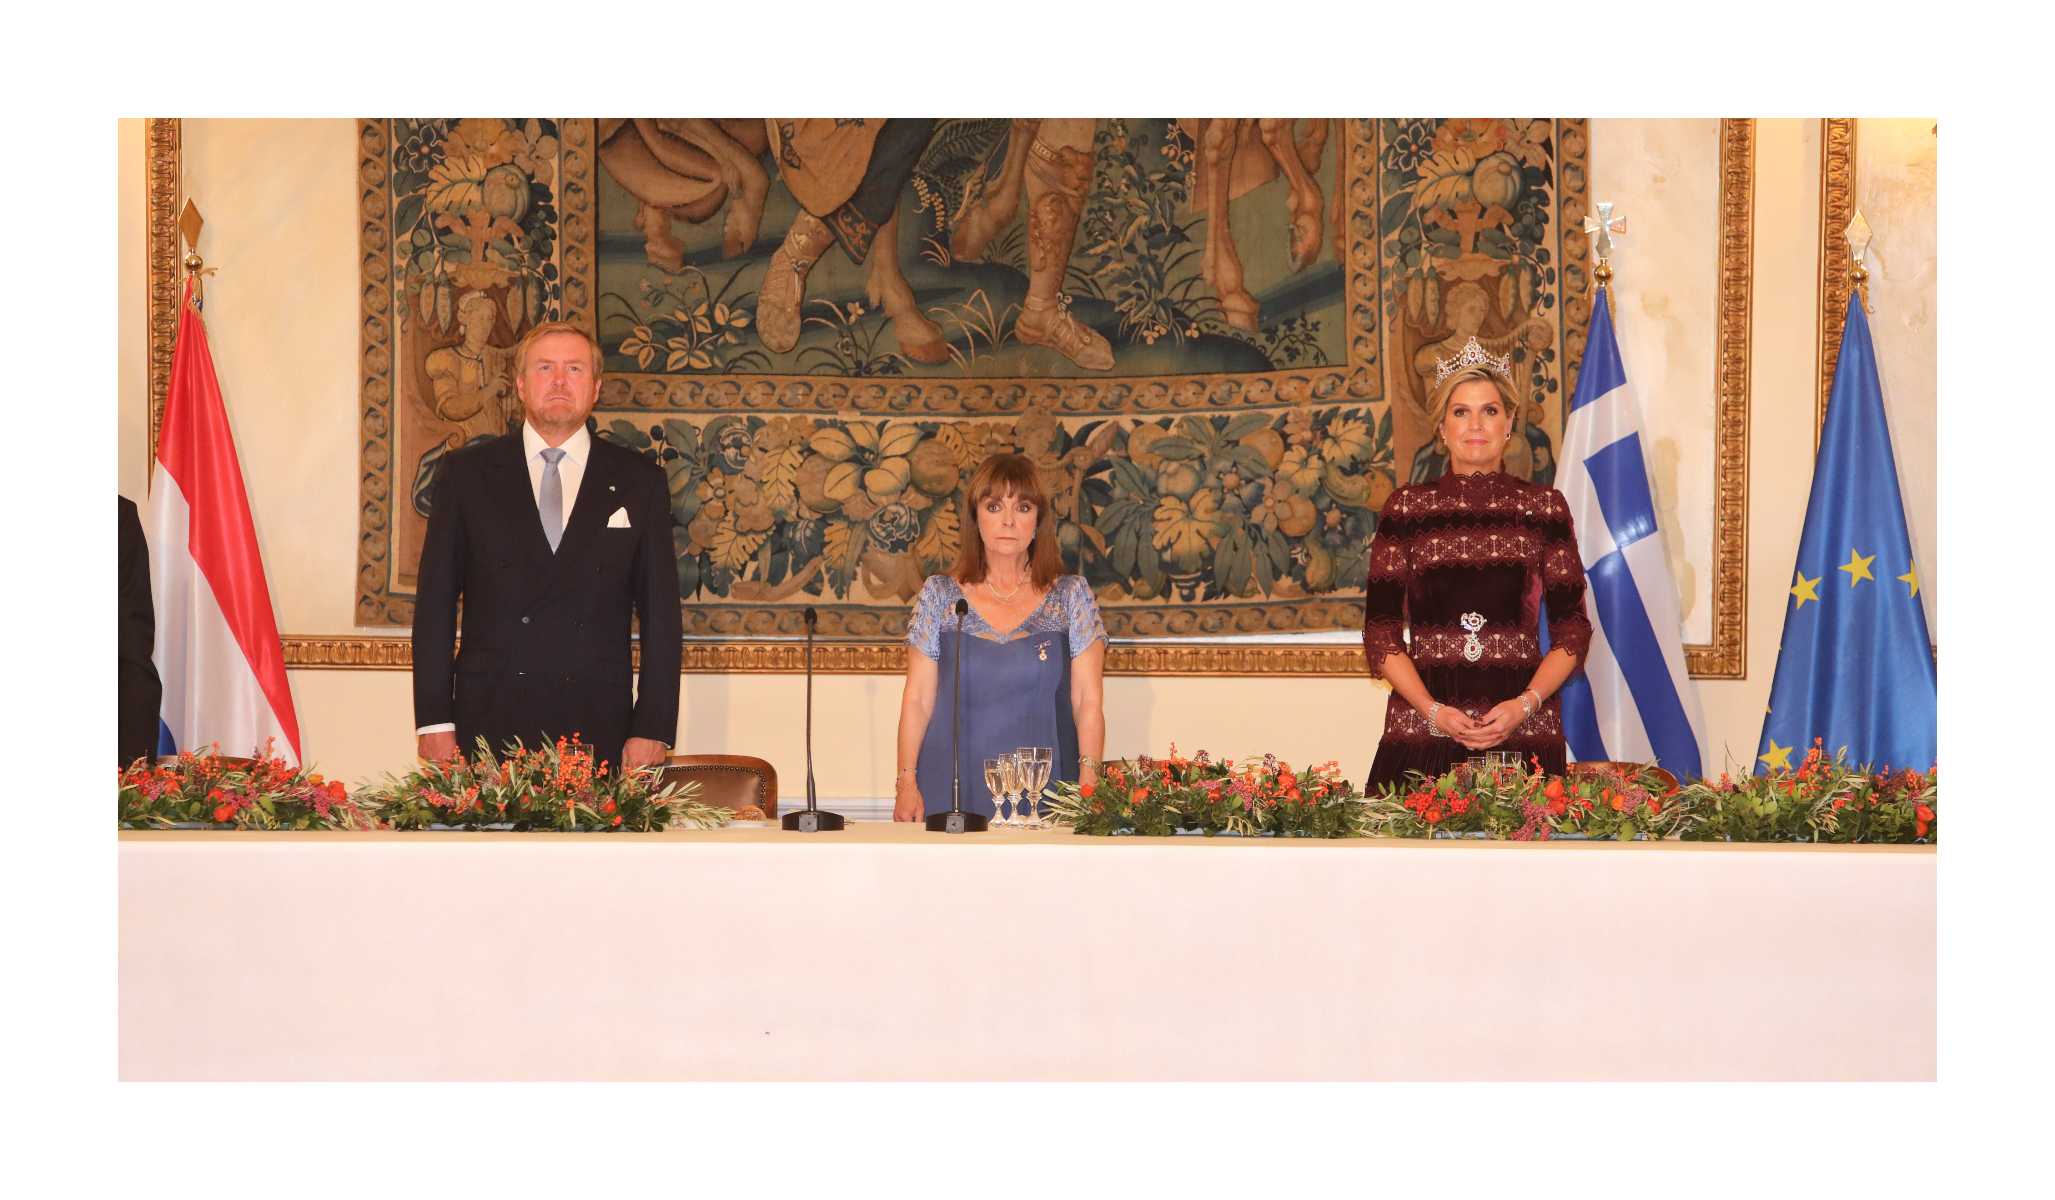 Όσα έγιναν στο επίσημο δείπνο προς τιμήν του Βασιλικού Ζεύγους της Ολλανδίας στο Προεδρικό Μέγαρο - Η προσφώνηση της Προέδρου της Δημοκρατίας και οι καλεσμένοι